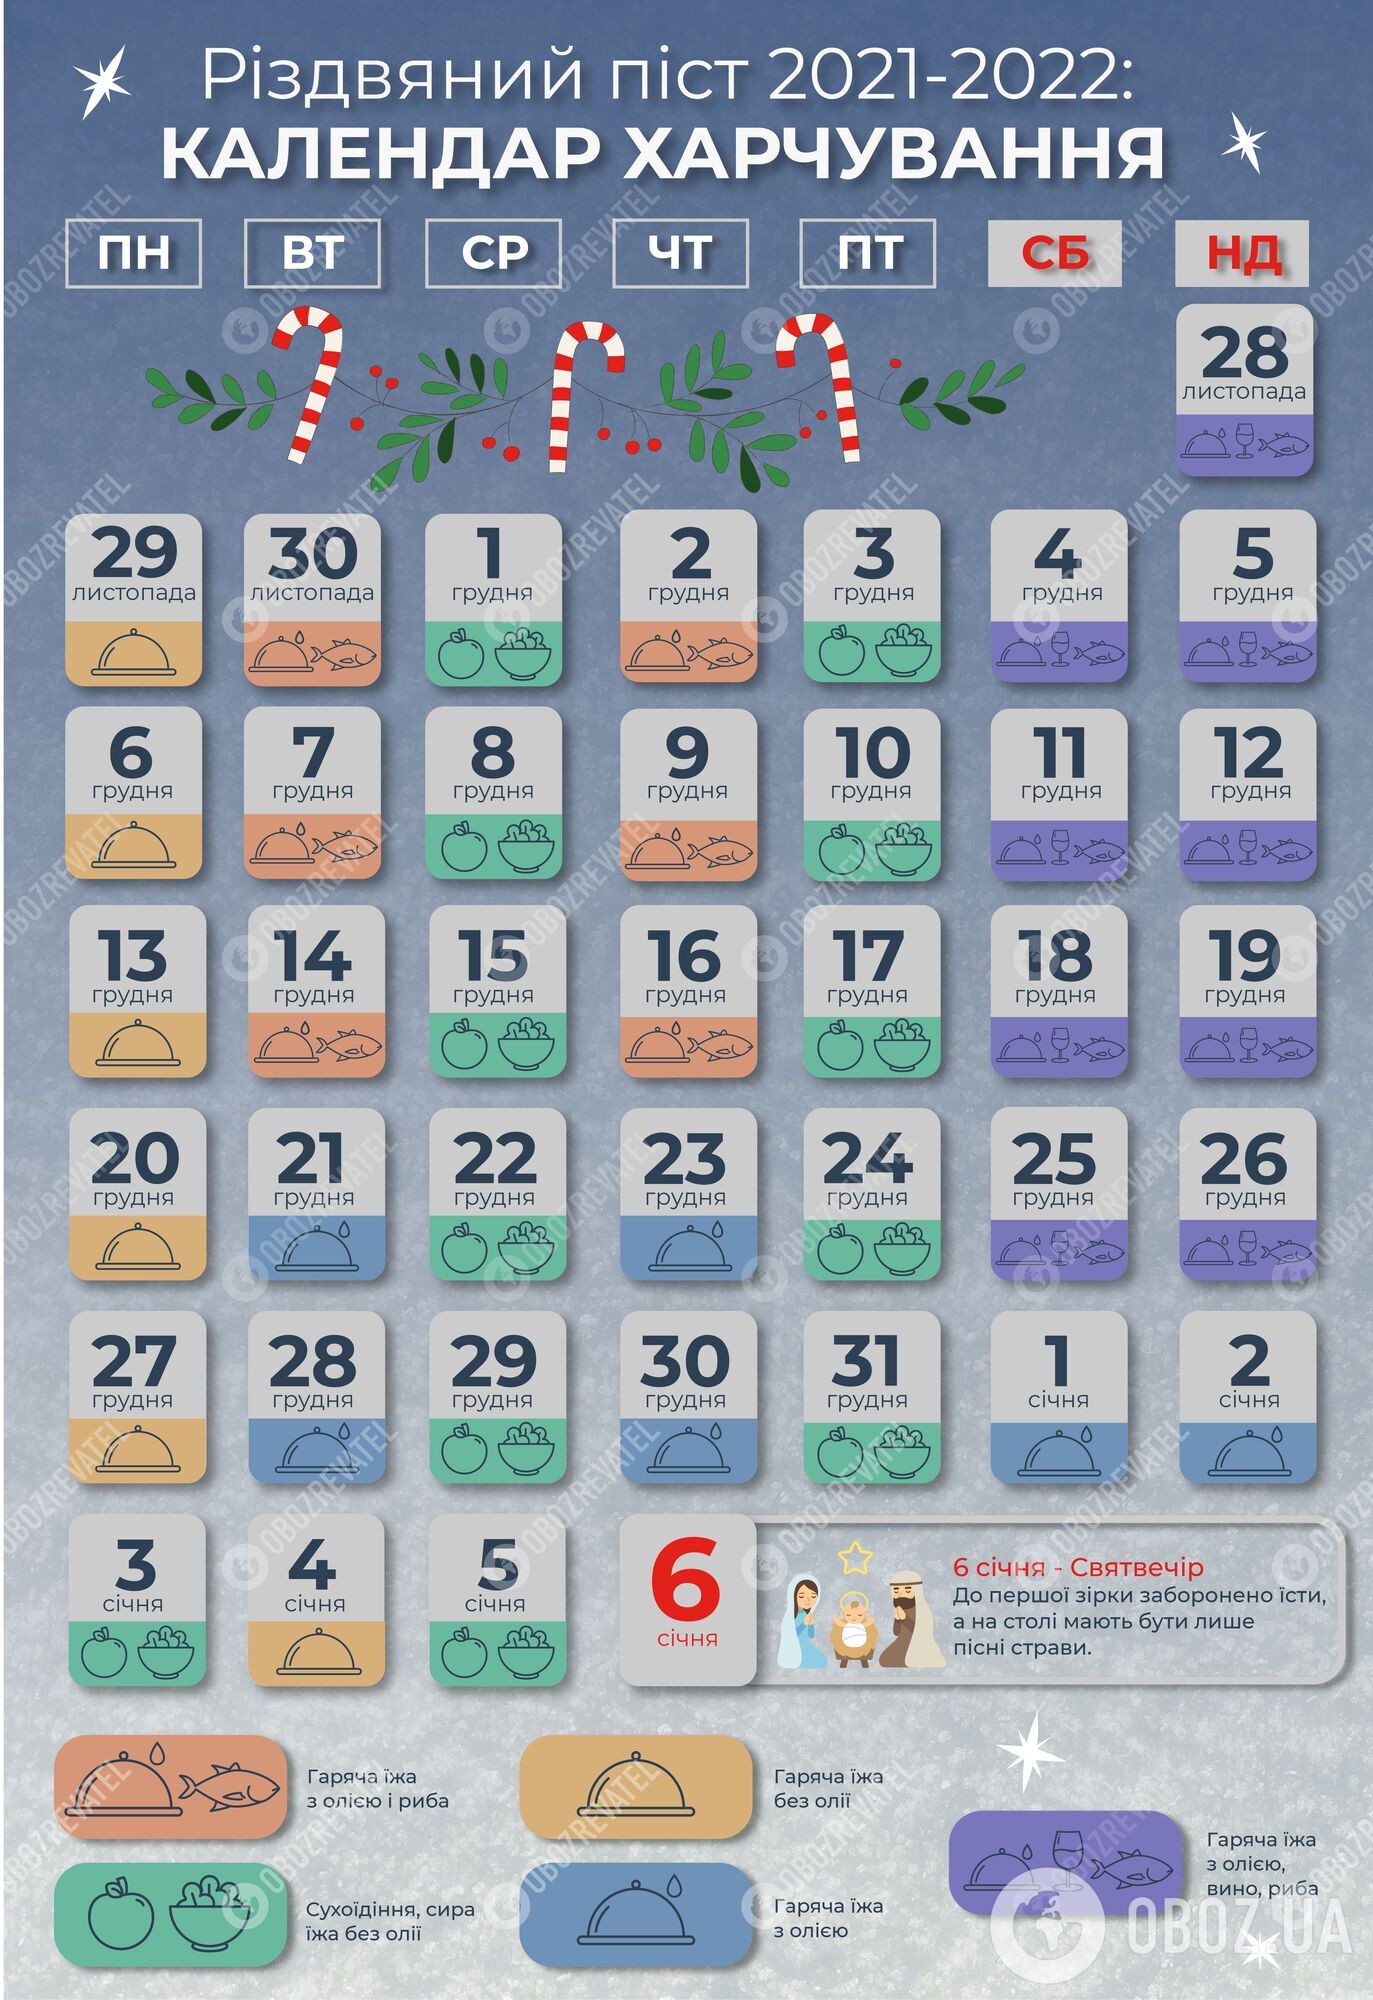 Рождественский пост 2021-2022: календарь питания по дням - инфографика |  FoodOboz